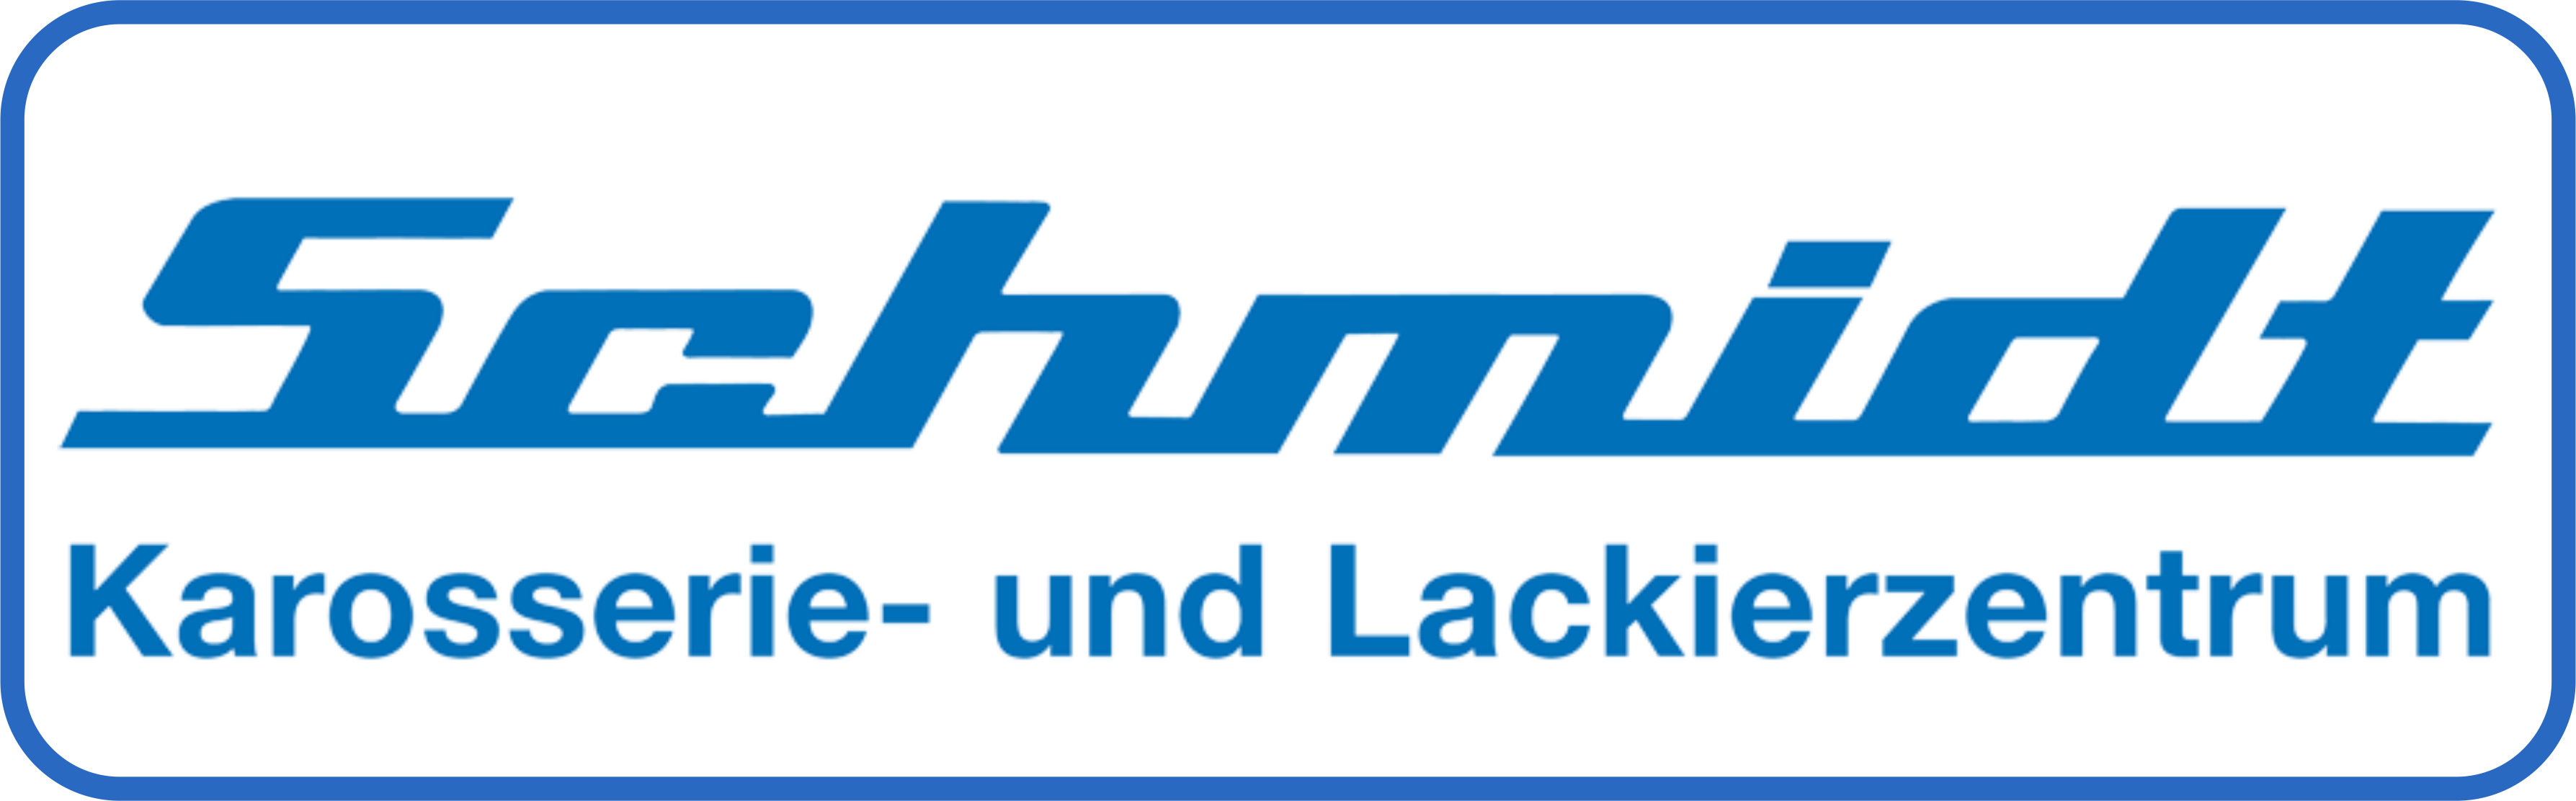 Richard Schmidt GmbH Karosserie- und Lackierzentrum